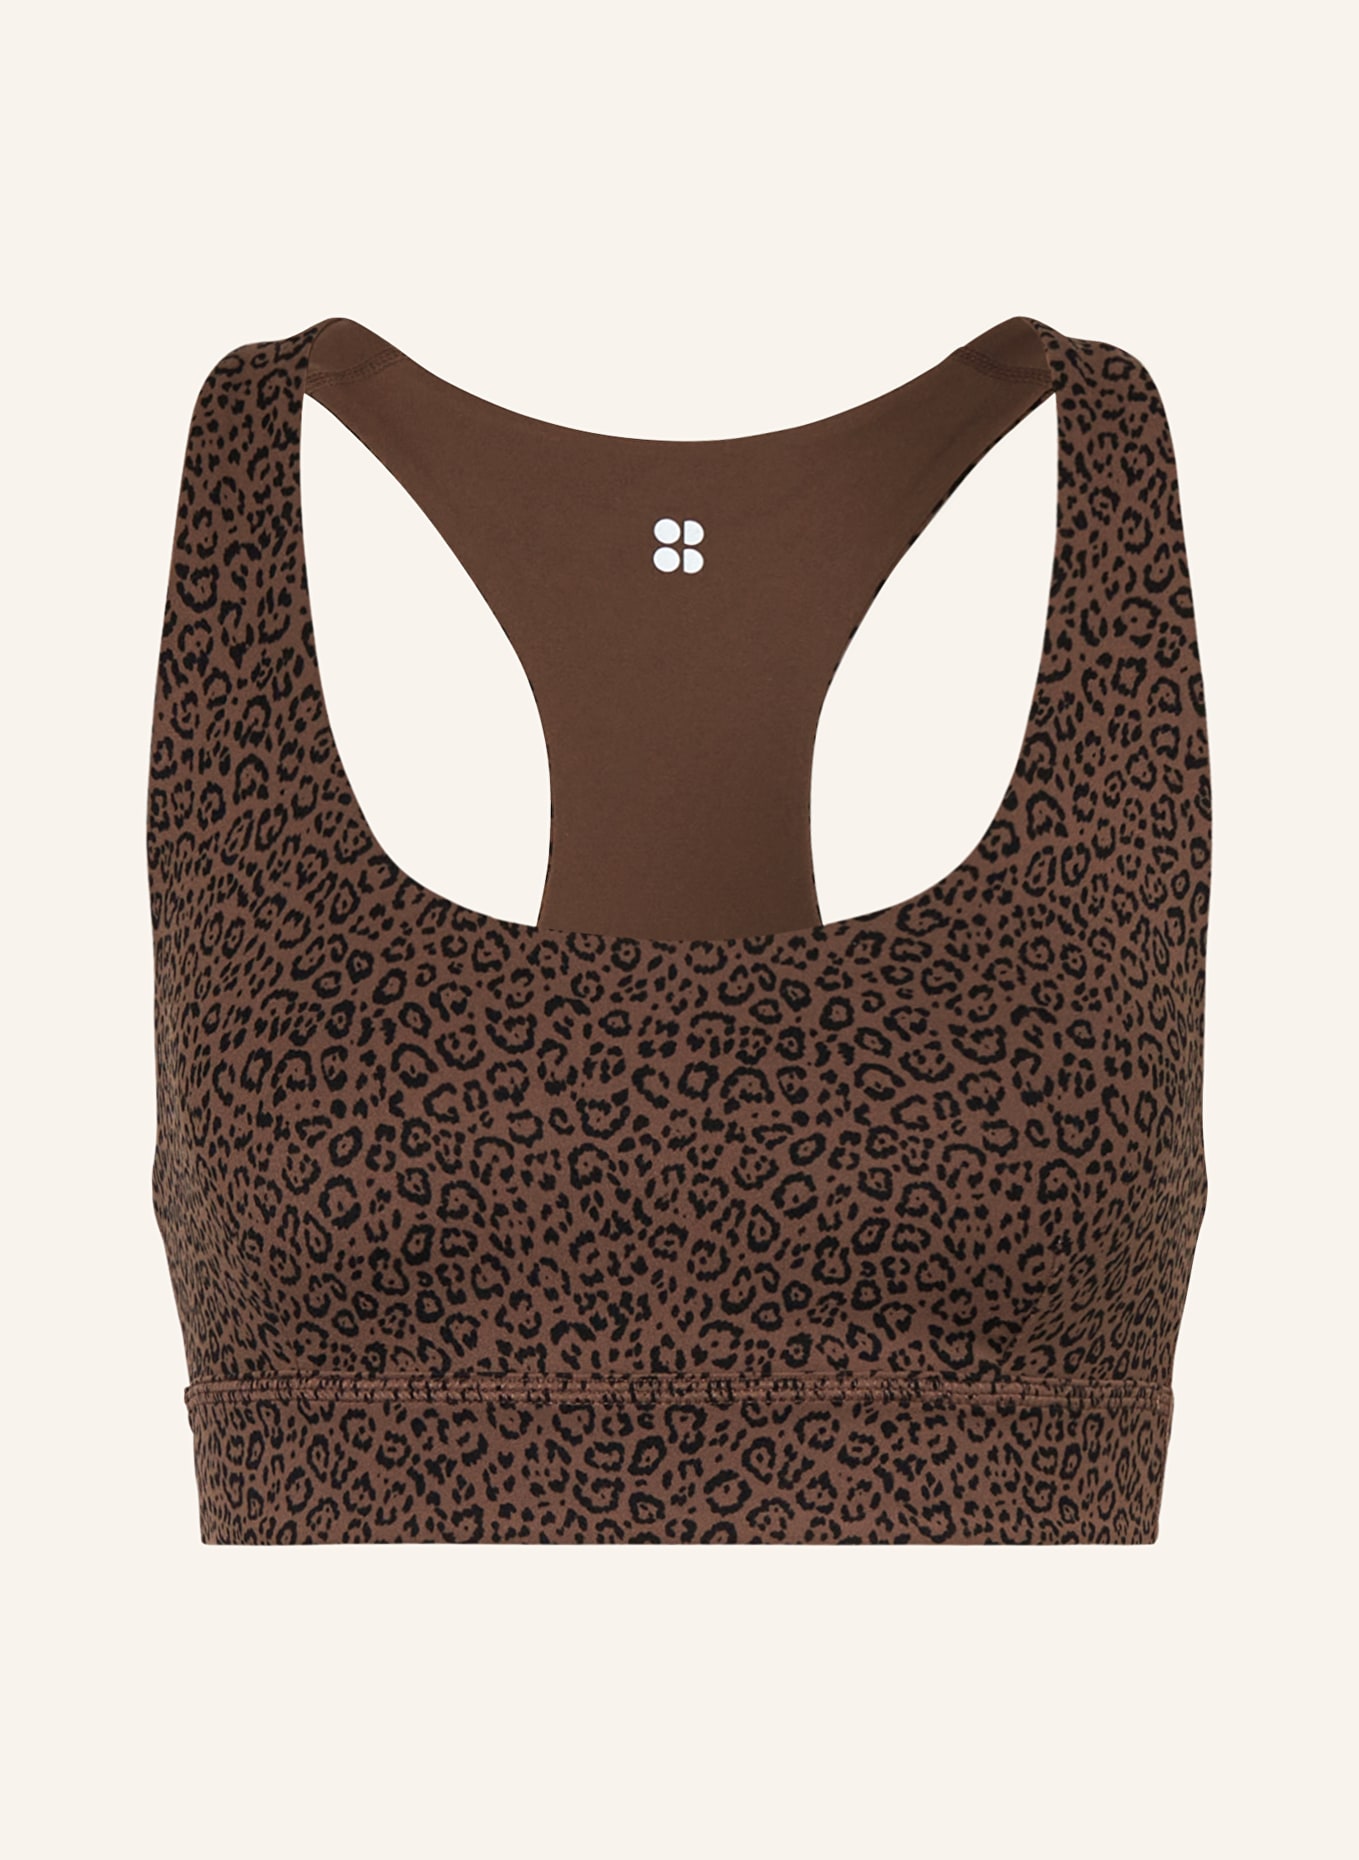 Sweaty Betty Sports bra in brown/ black